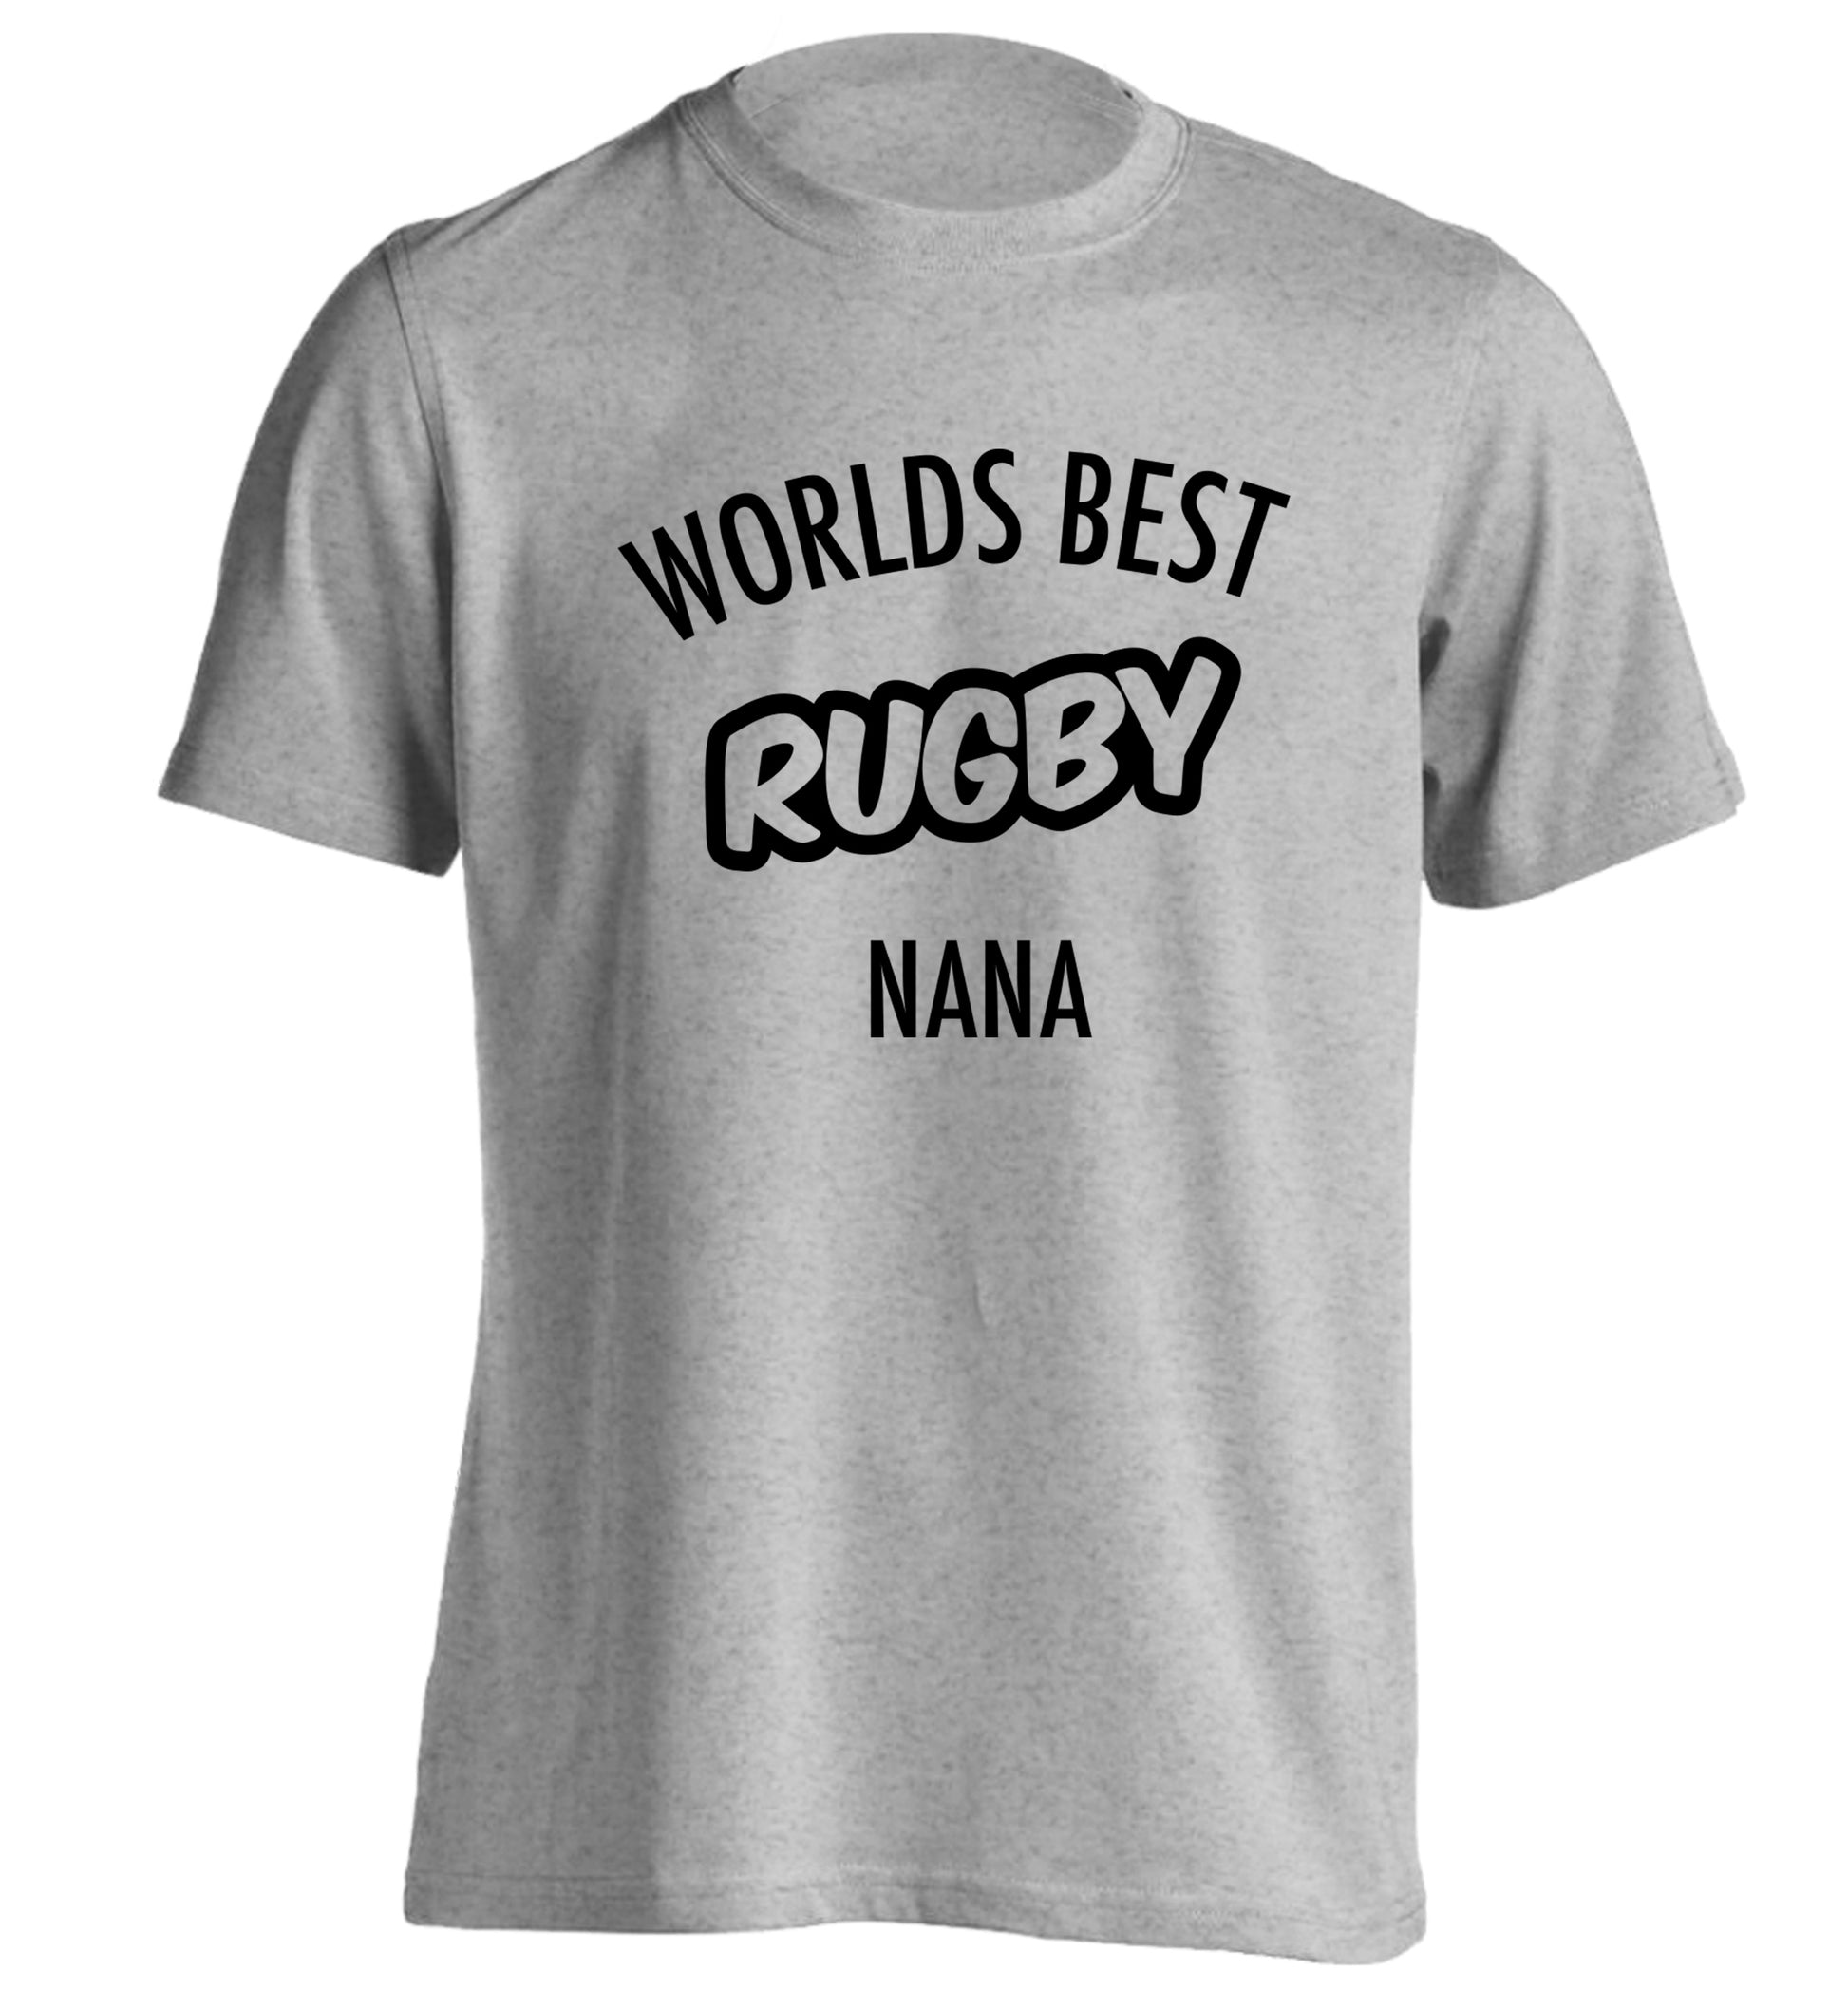 Worlds Best Rugby Grandma adults unisex grey Tshirt 2XL